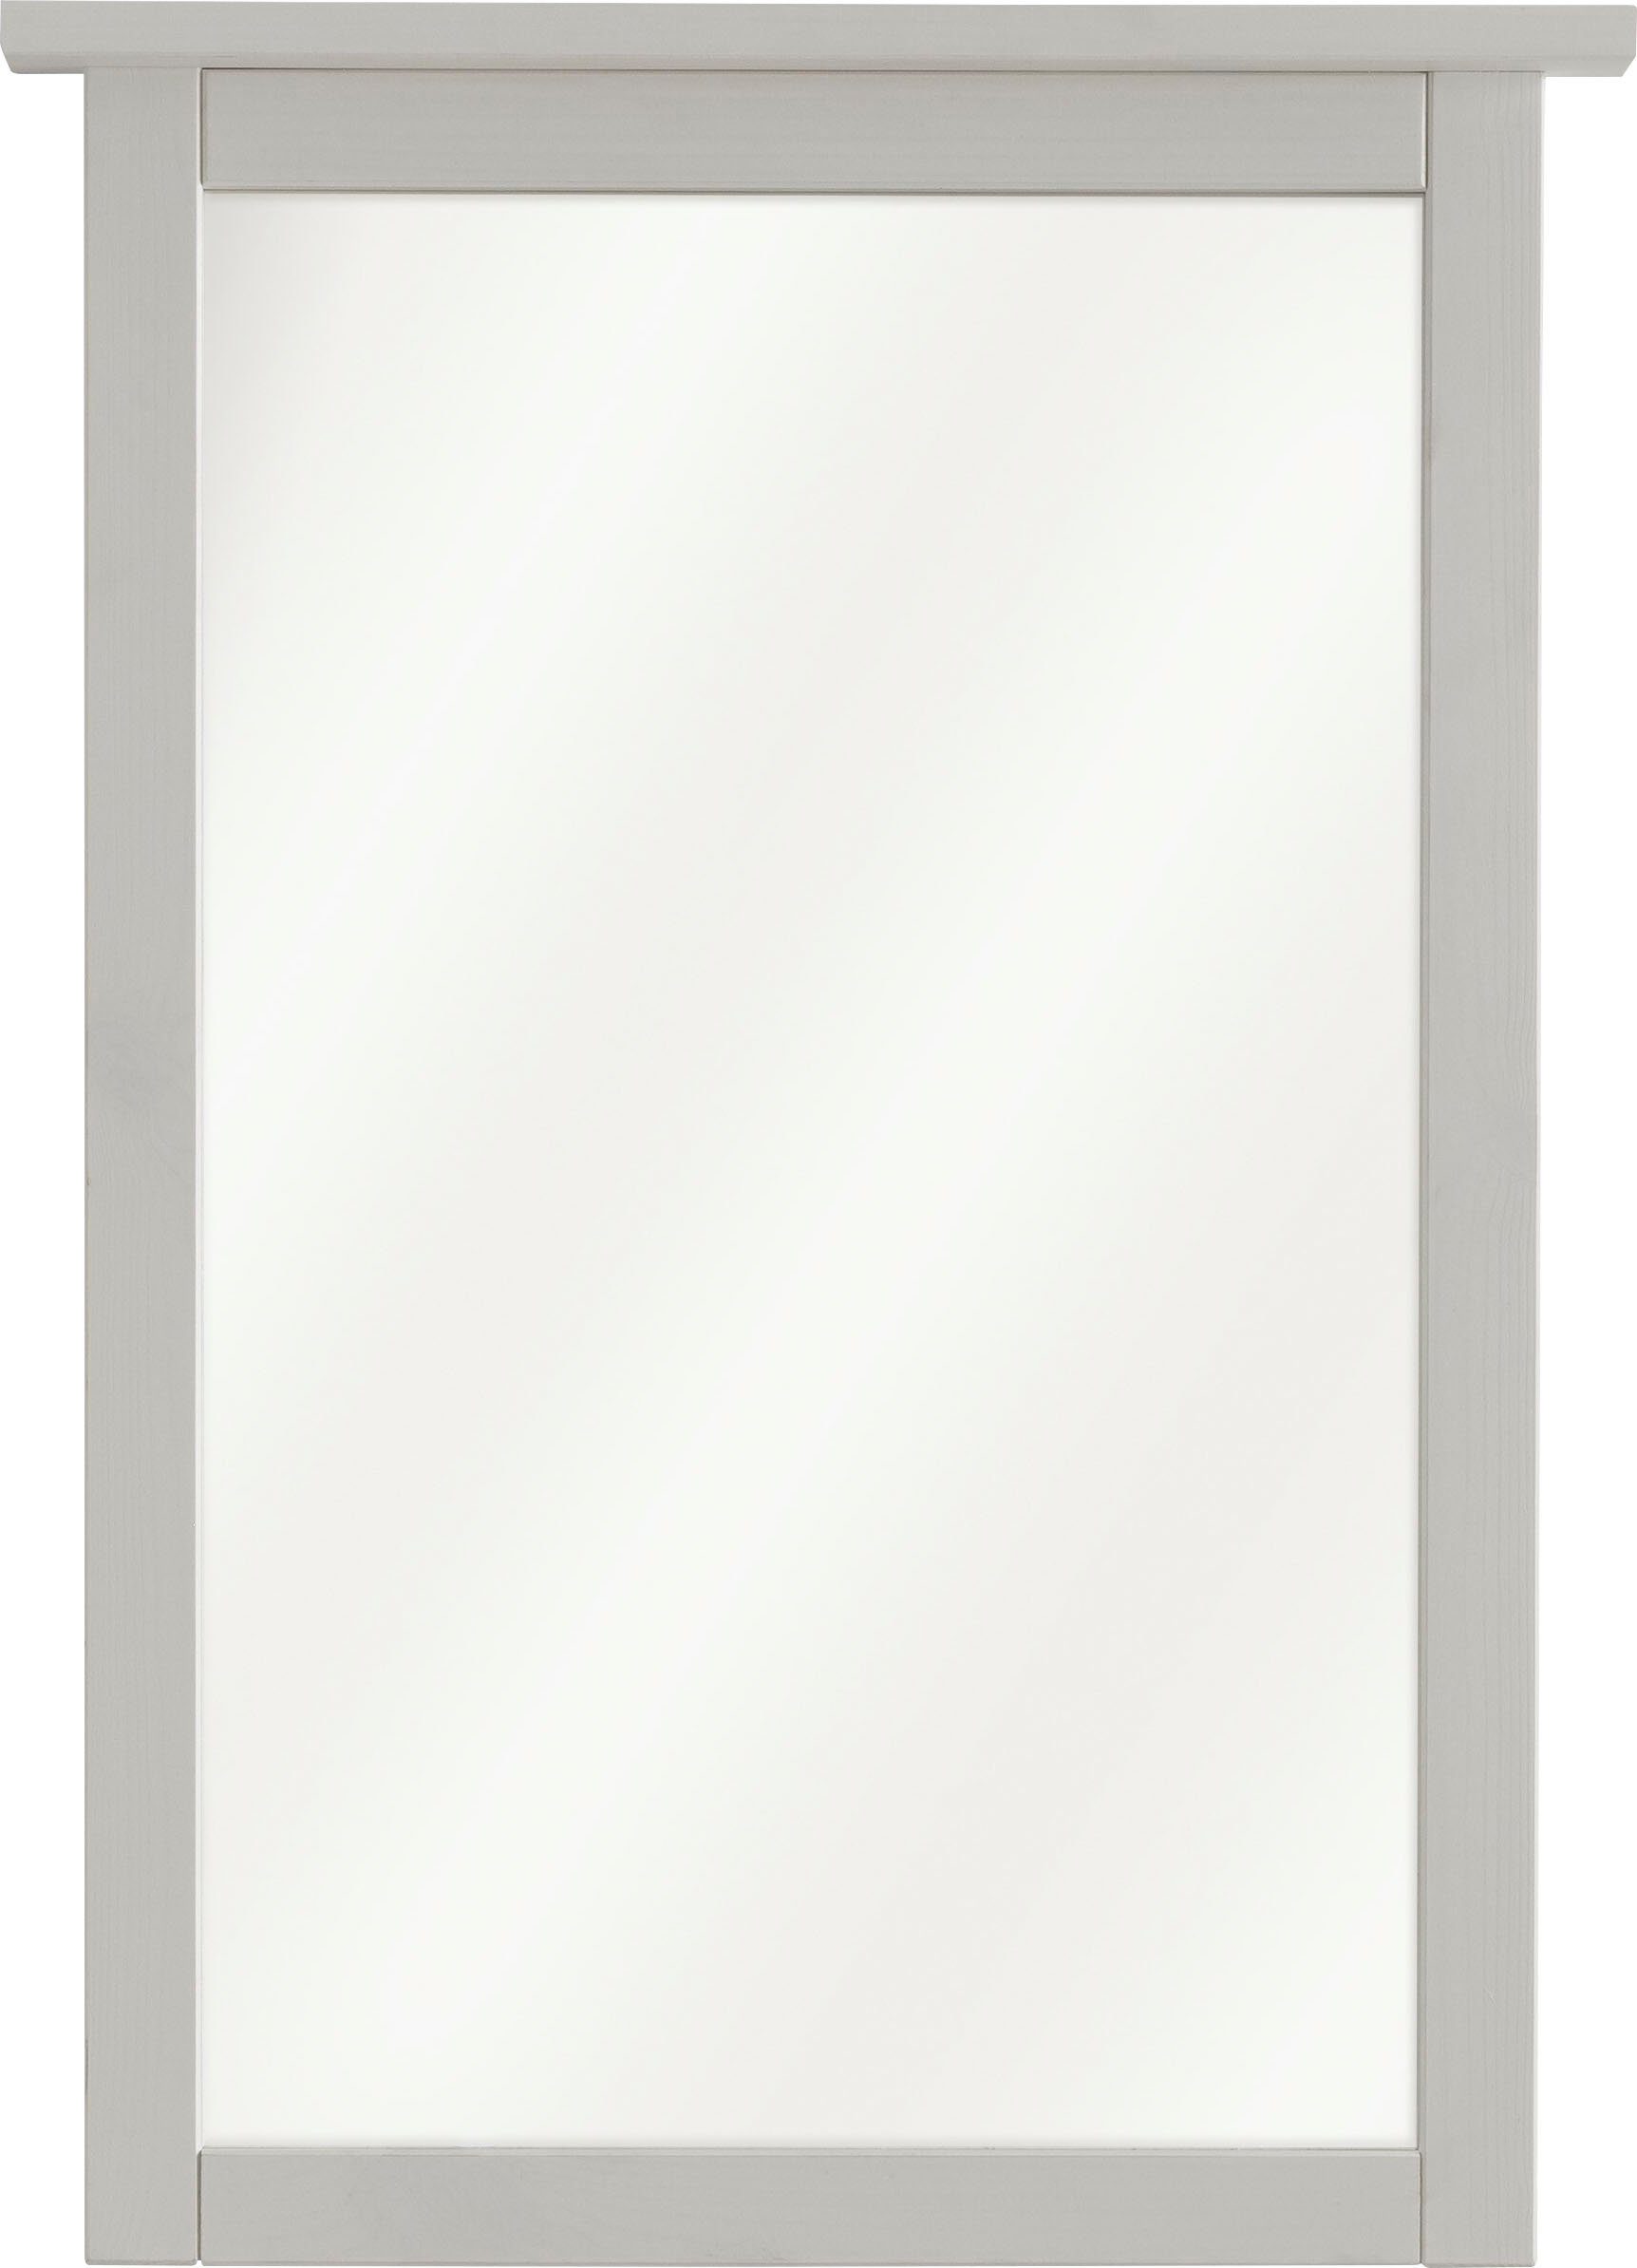 massiv, Kiefer Weiß Solvita, cm, Infantil Landhaus Wohn[glück]lich 58 by Wandspiegel, Spiegel, Wandspiegel Breite